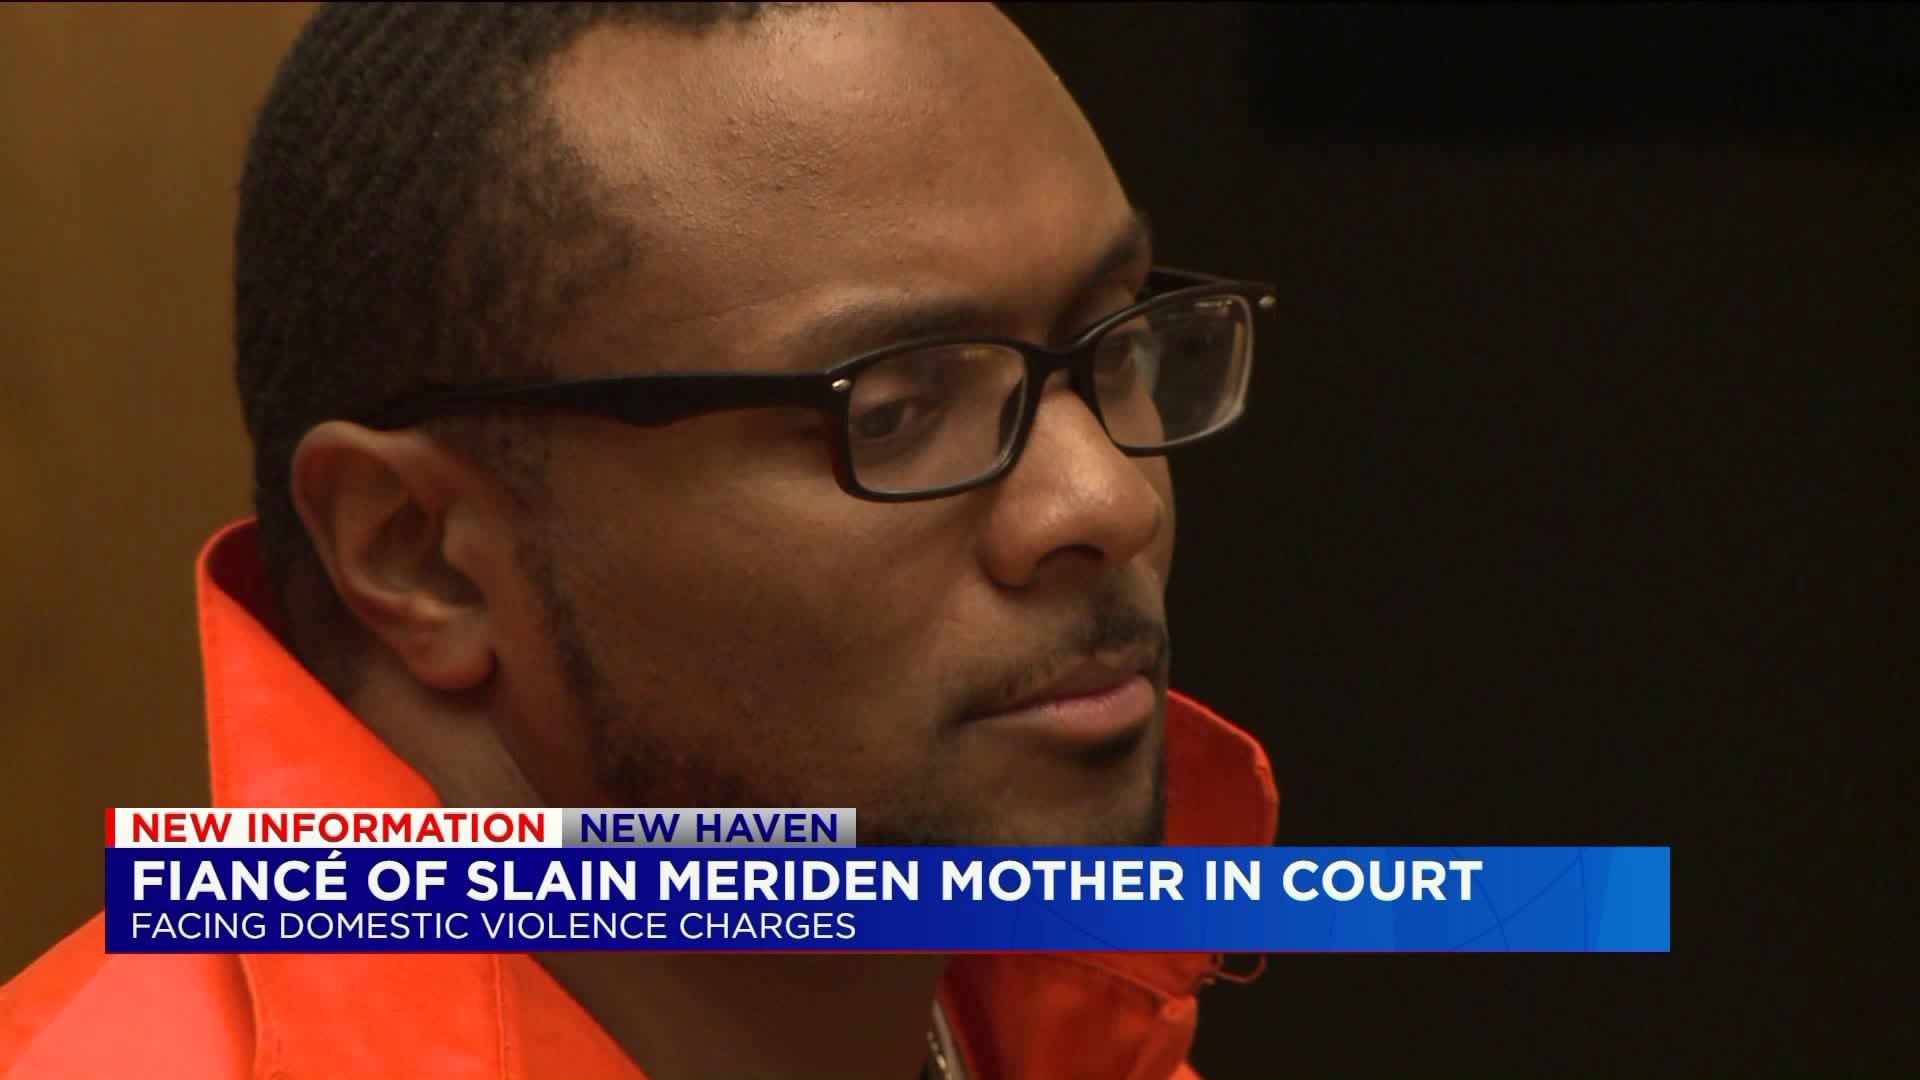 Fiance of slain Meriden mother in court